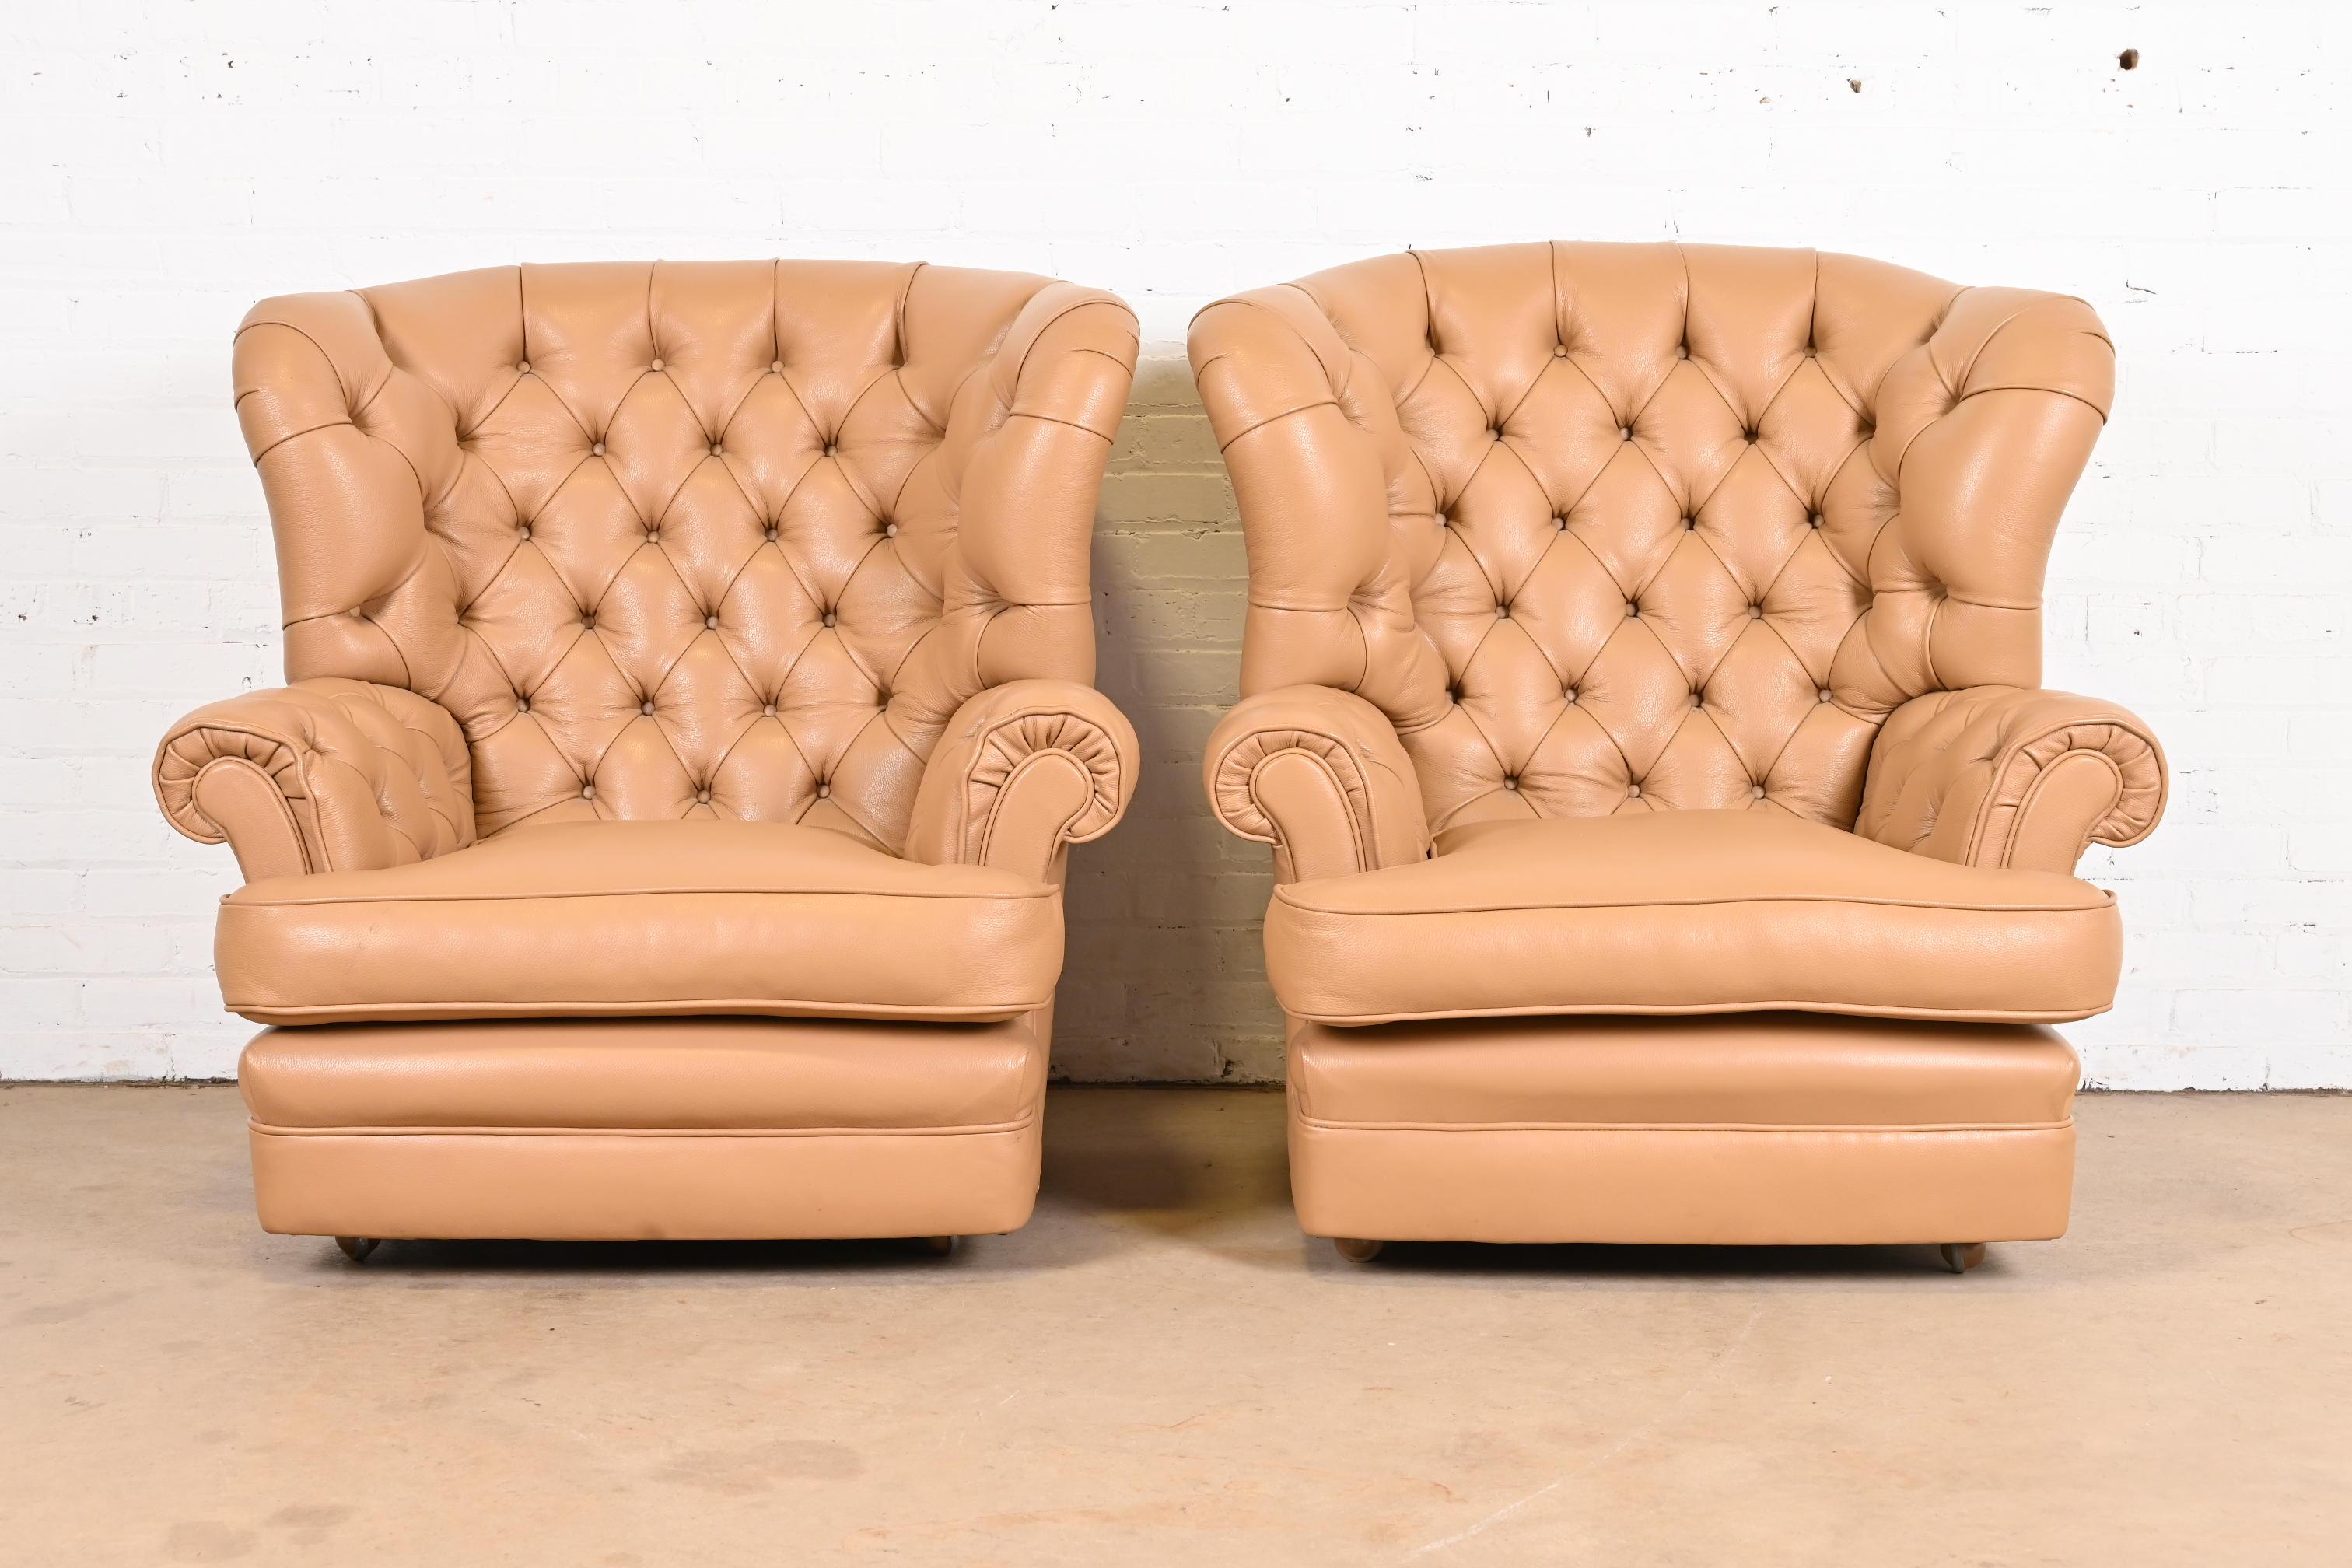 Une magnifique paire de fauteuils de cheminée, de fauteuils club ou de fauteuils de salon à dossier ailé de style Chesterfield.

États-Unis, fin du 20e siècle

En cuir capitonné, sur roulettes.

Dimensions : 38 